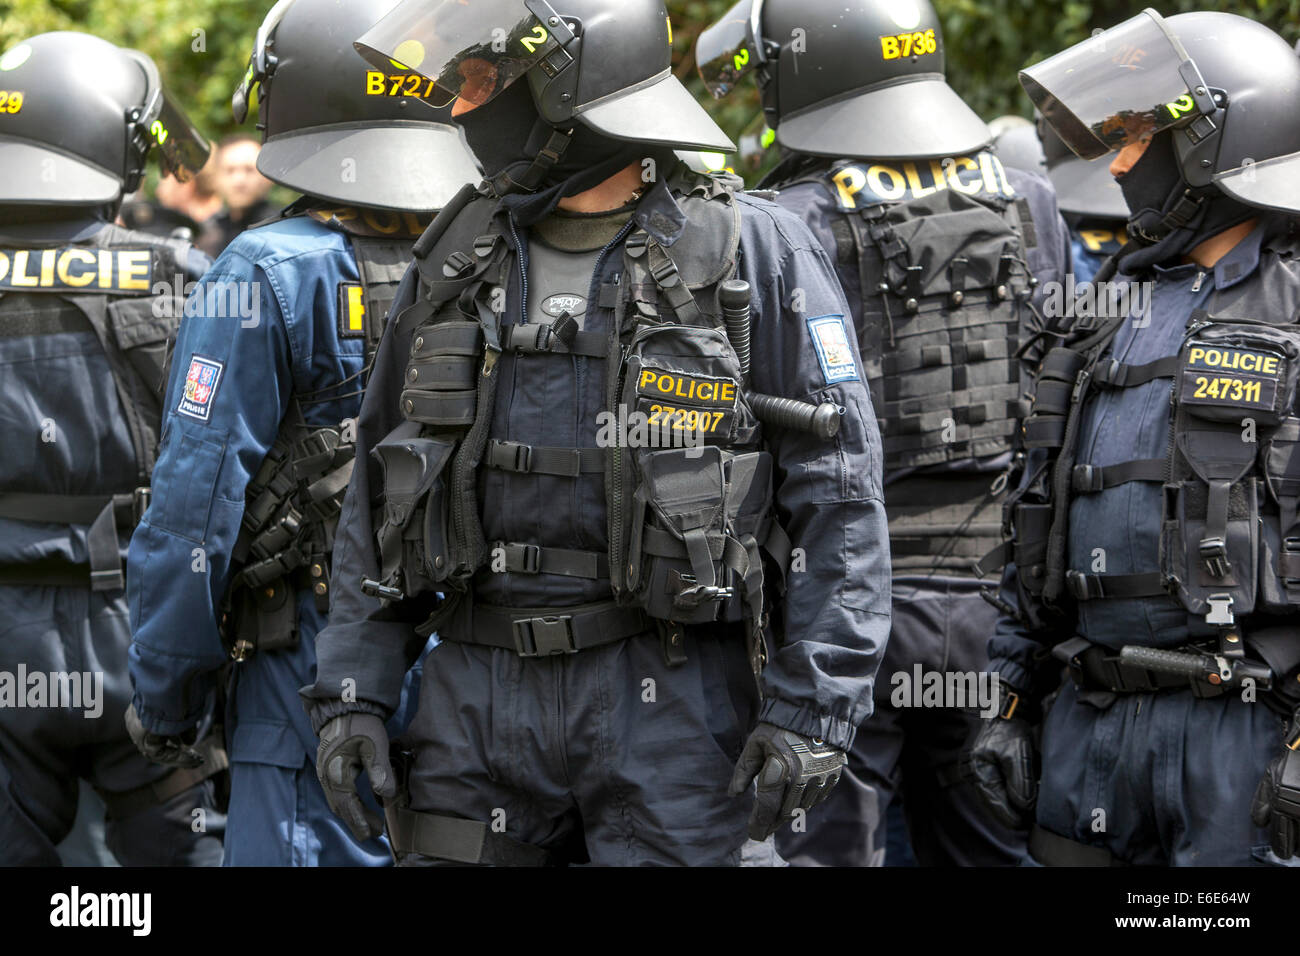 La unidad de intervención de la policía checa en uniforme Foto de stock